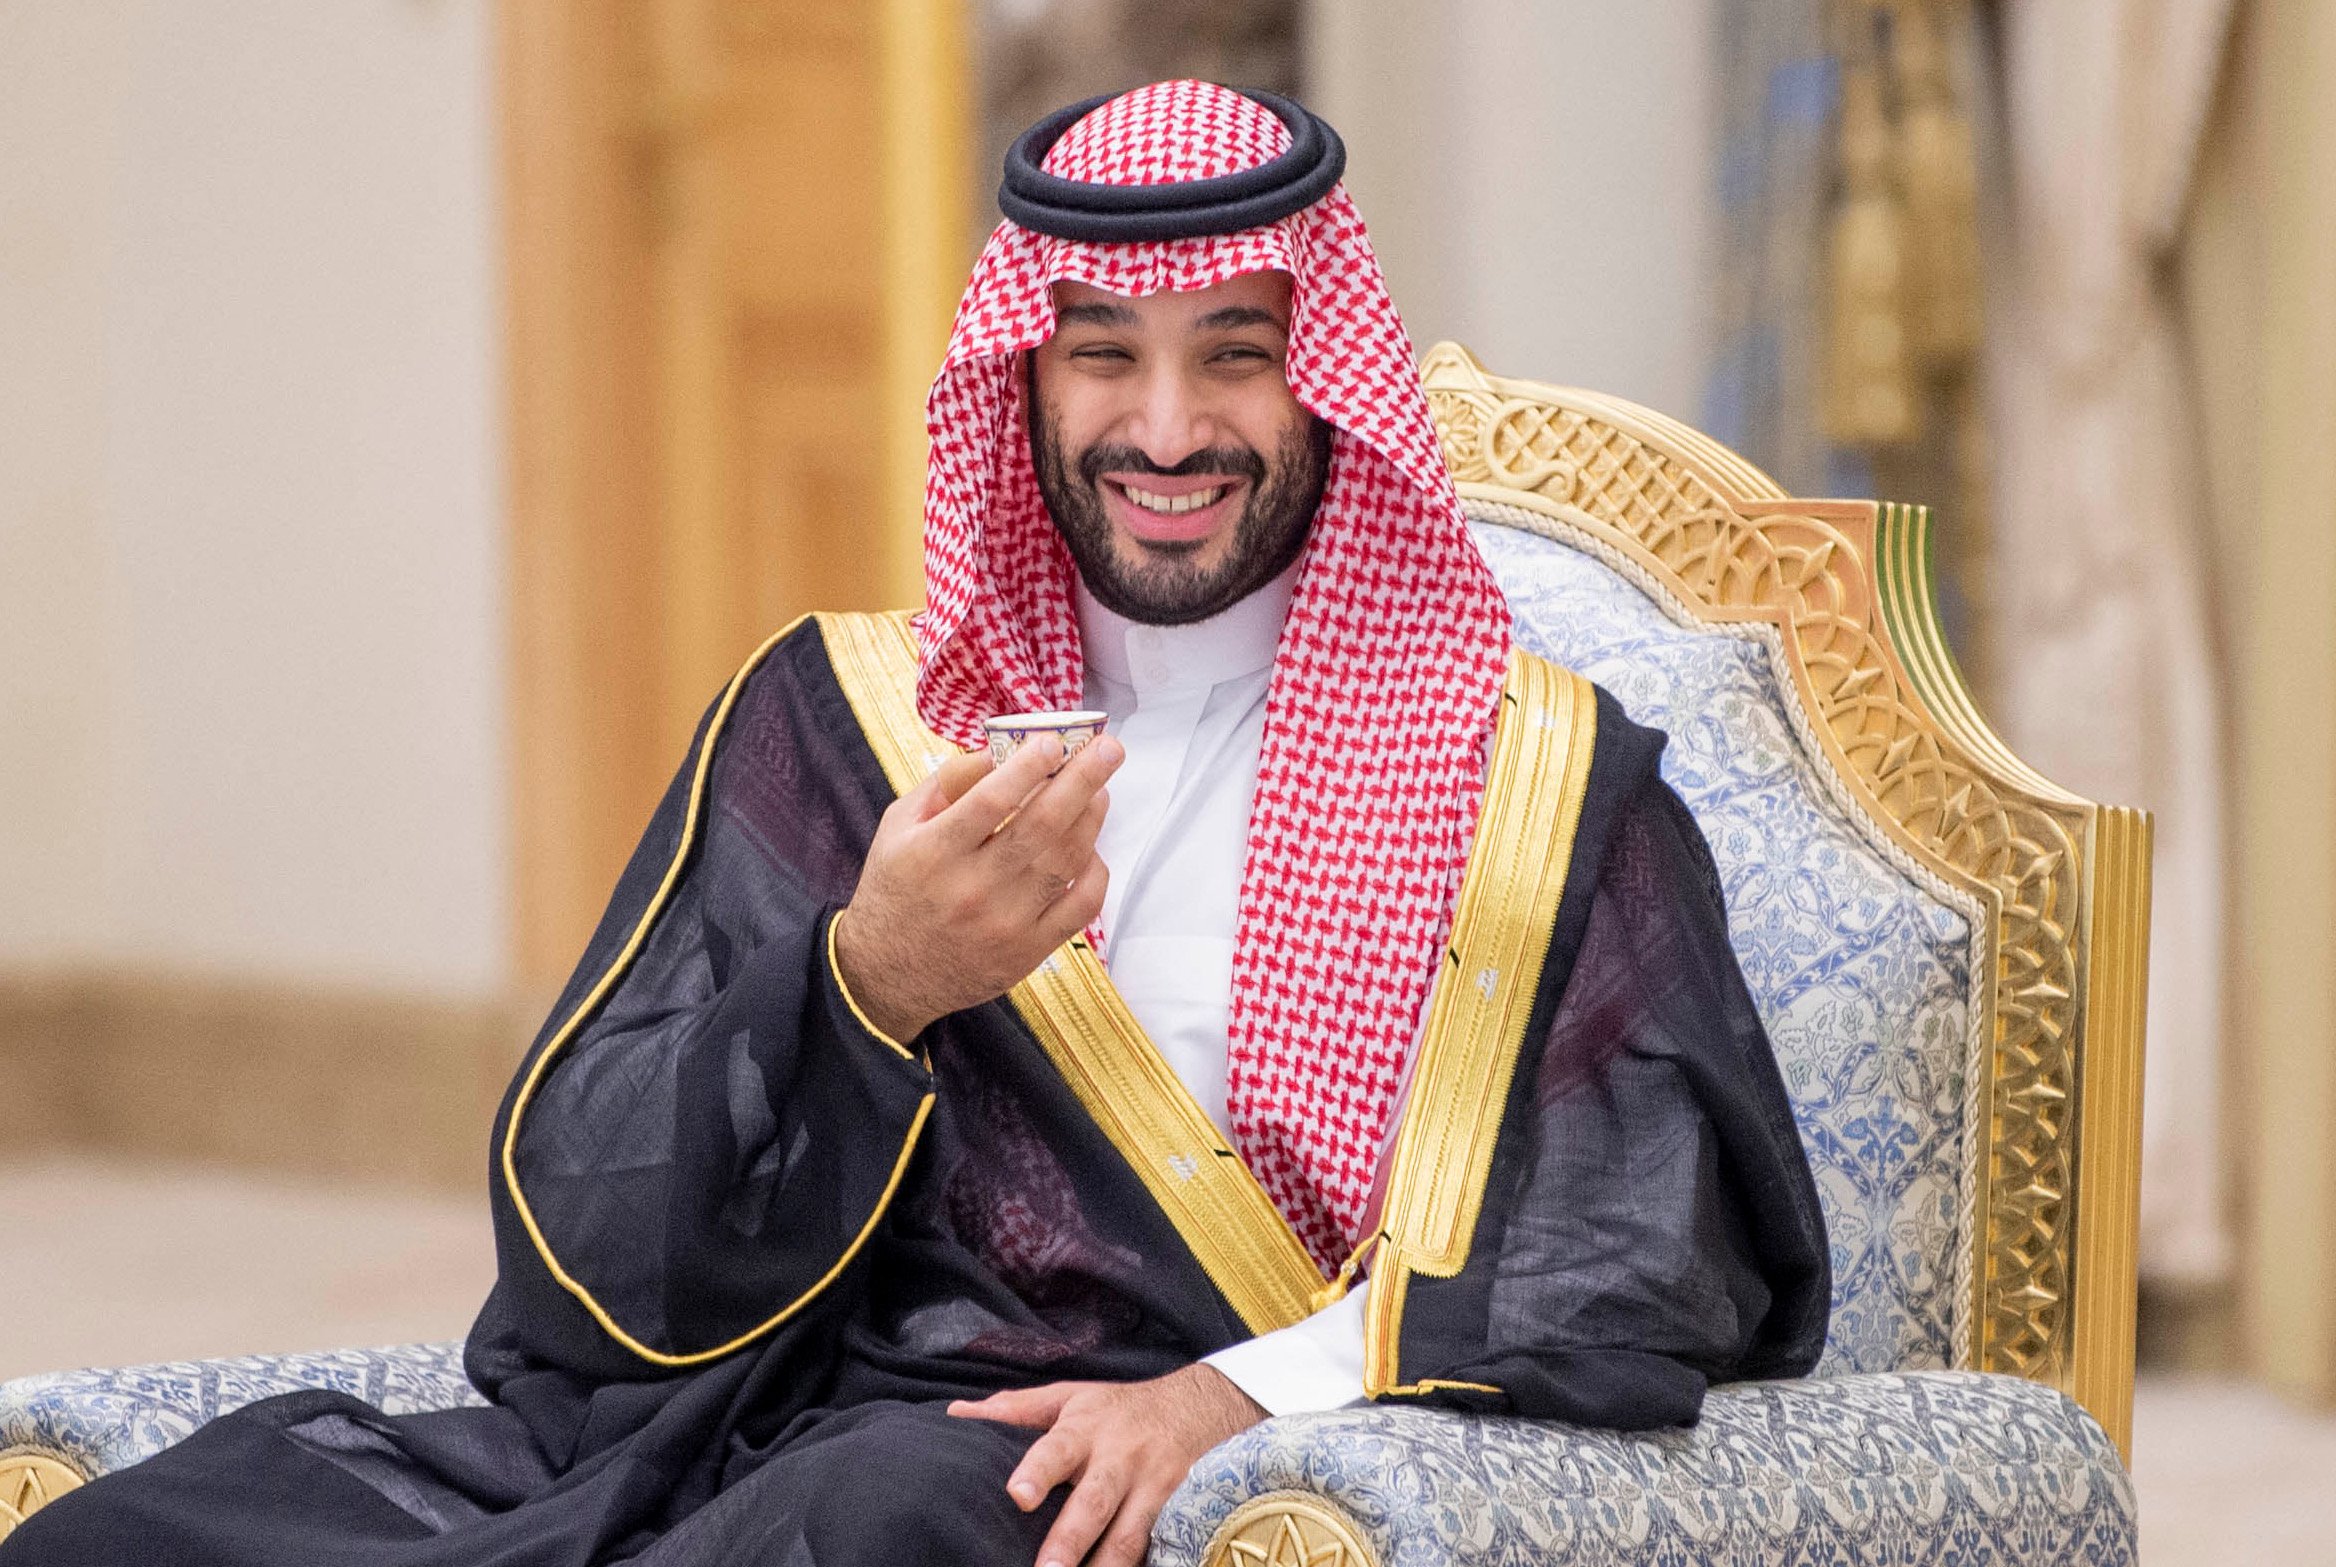 Saudi royal factory. Мухаммед Бин Салман. Принц Салман Саудовская Аравия. Наследный принц Мухаммед Бен Салман. Мухаммед ибн Салман Аль Сауд наследные принцы Саудовской Аравии.